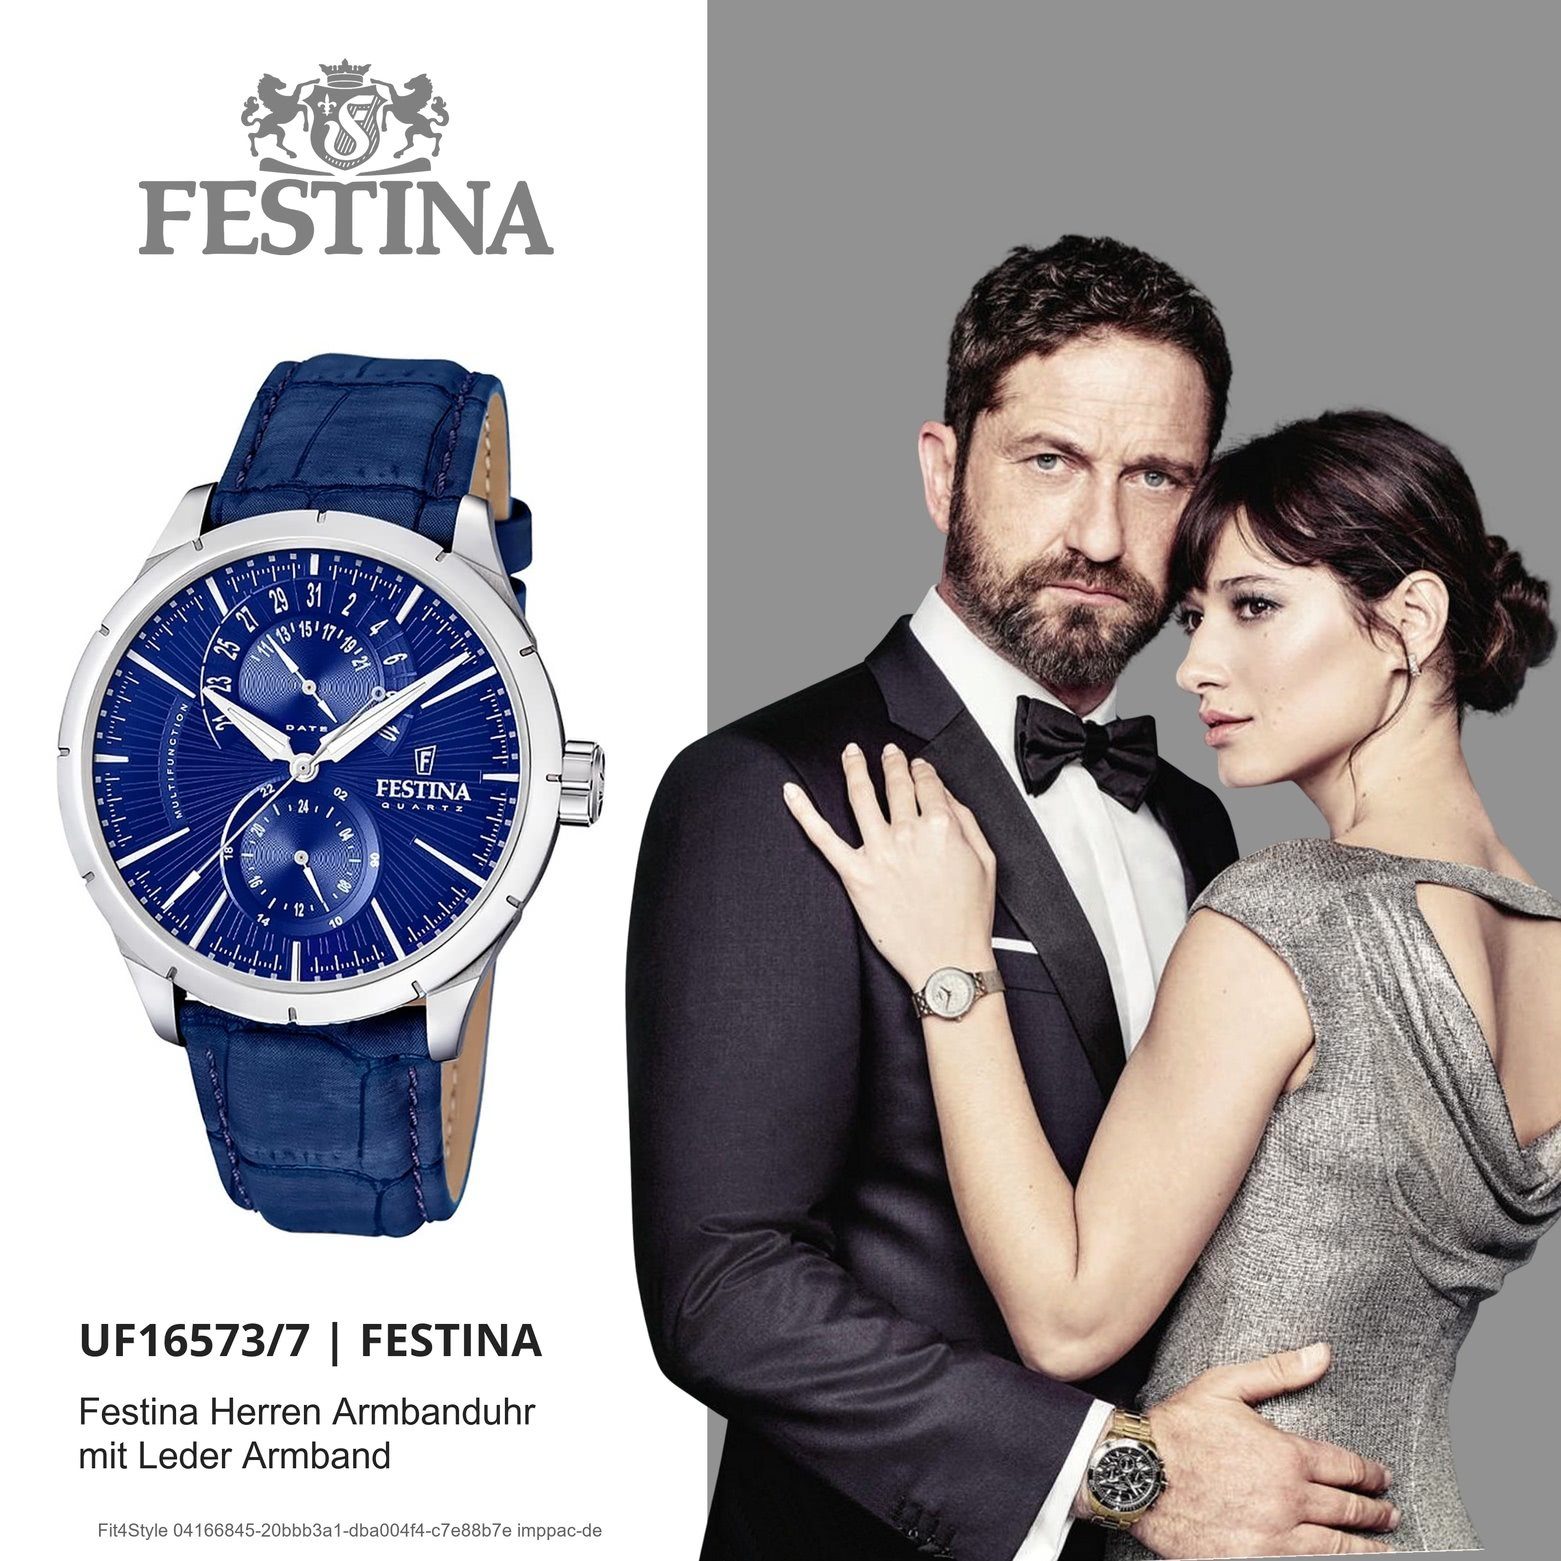 Festina Multifunktionsuhr Herren UF16573/X blau schwarz Festina Lederarmband Uhr Herren Armbanduhr rund, F16573/X, Elegant